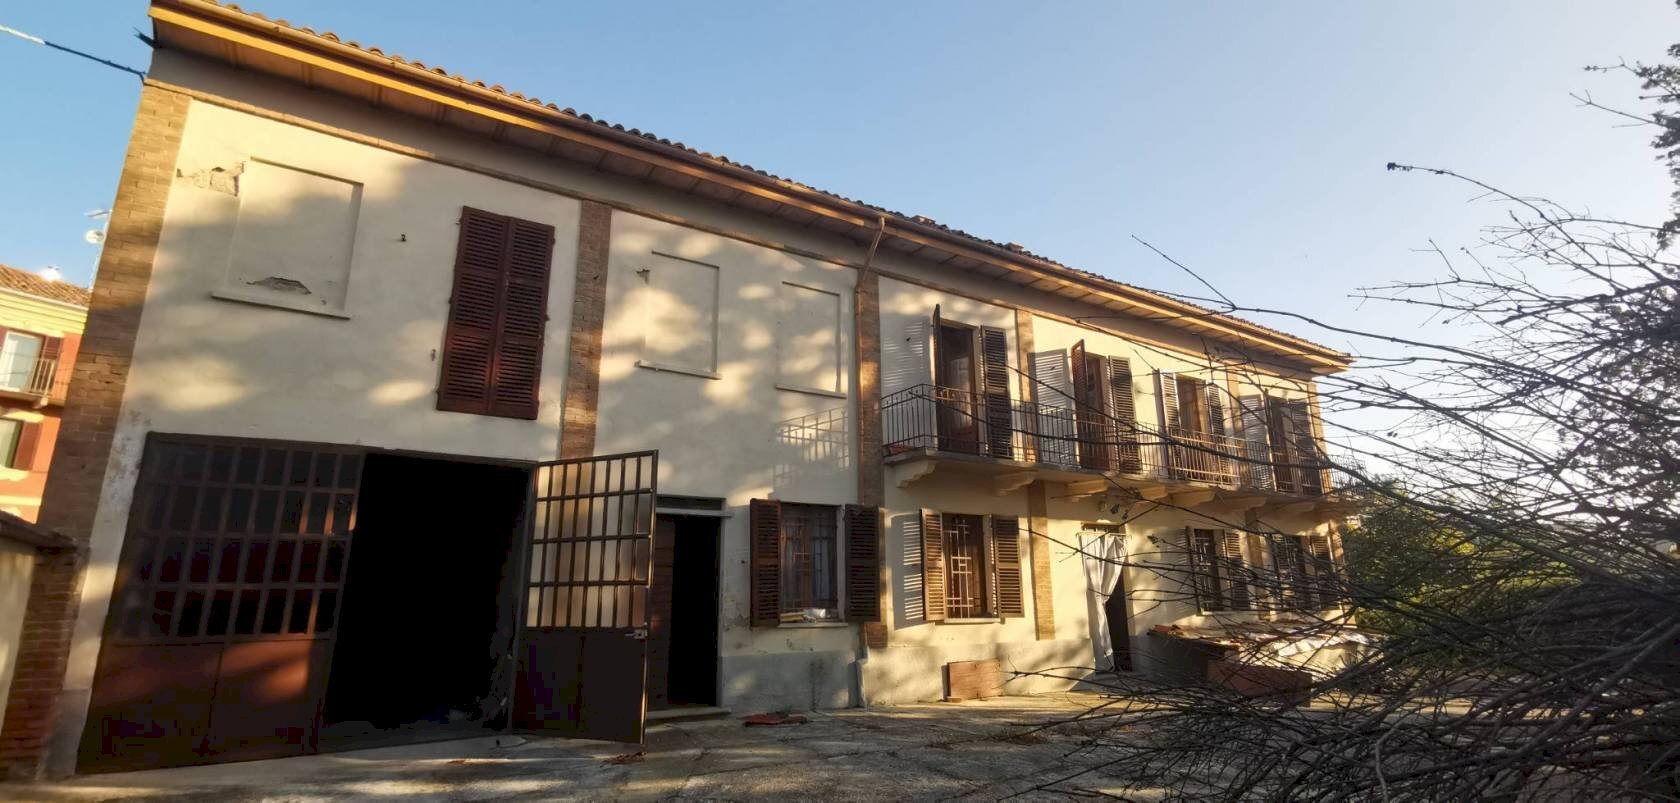 Rustico / Casale in vendita a Vigliano d'Asti, 1 locali, prezzo € 132.000 | PortaleAgenzieImmobiliari.it